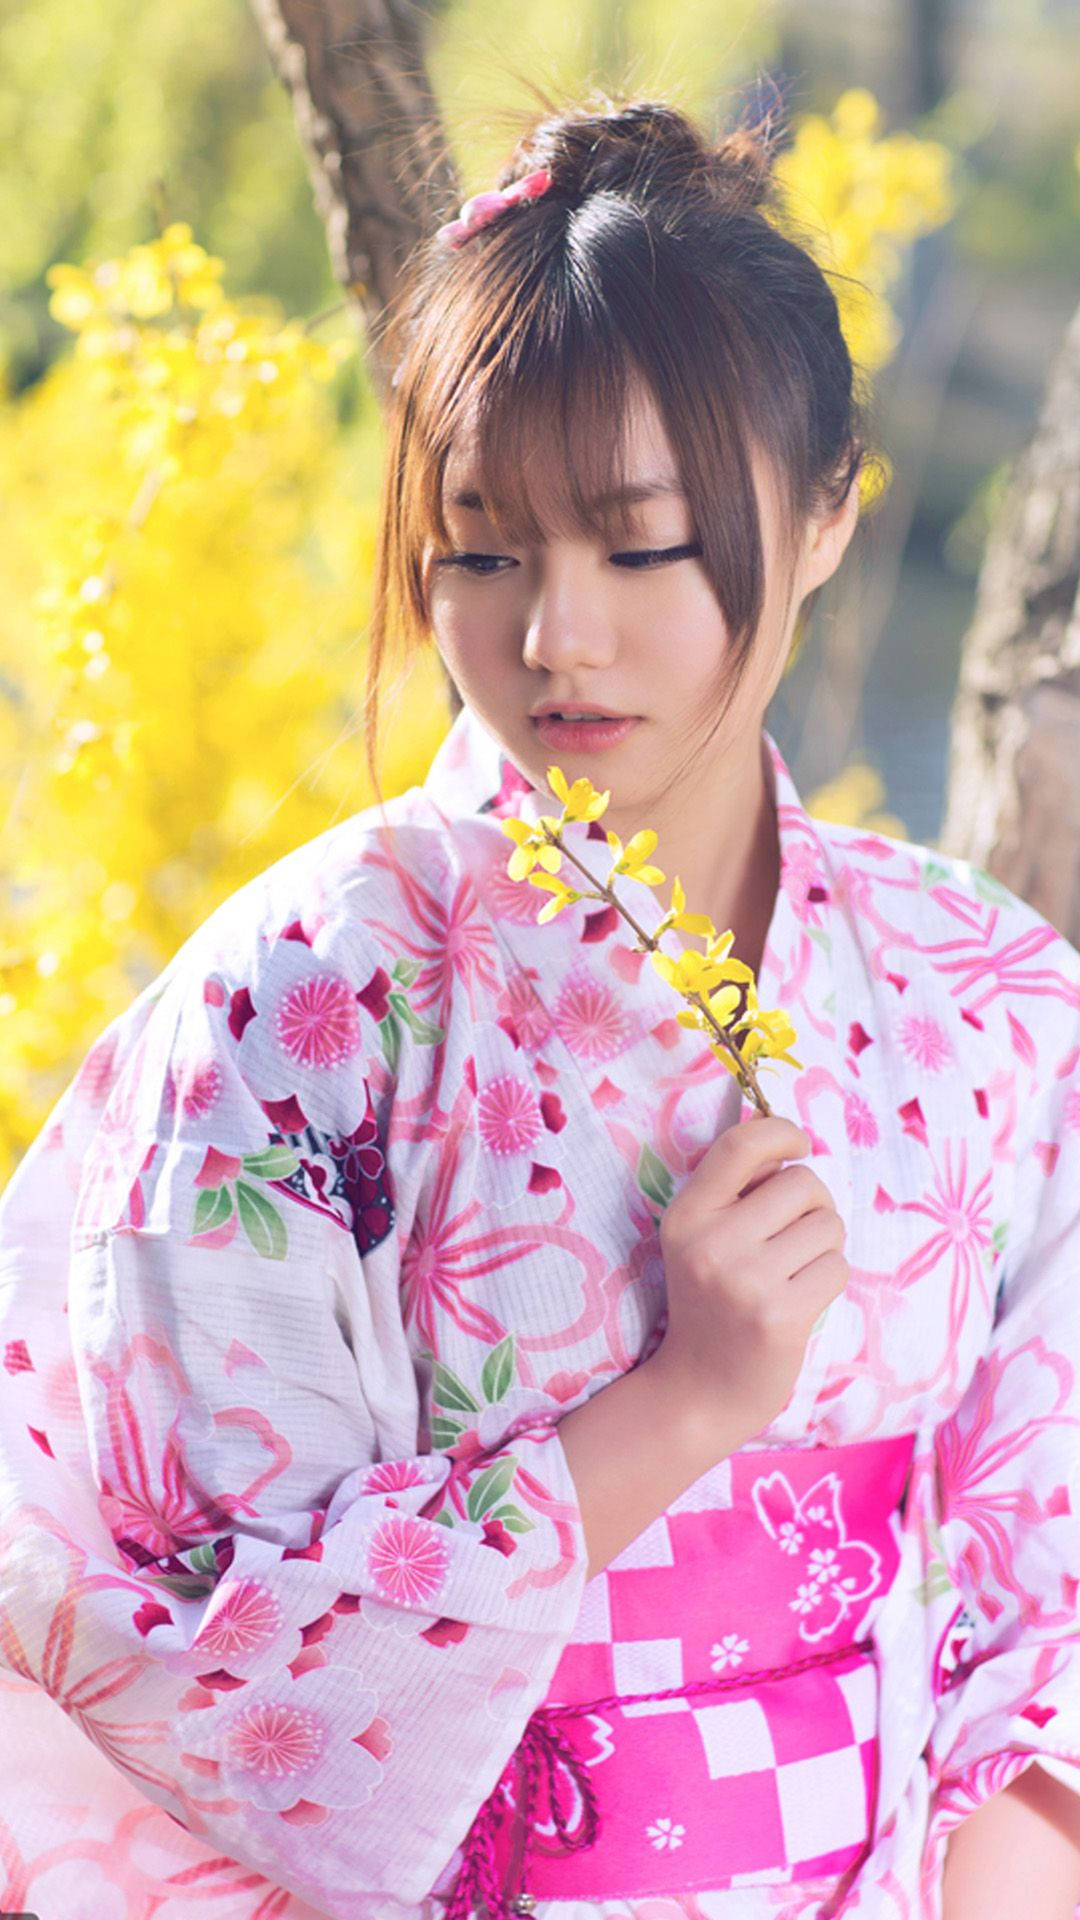 Japan Girl Pink Floral Yukata Background